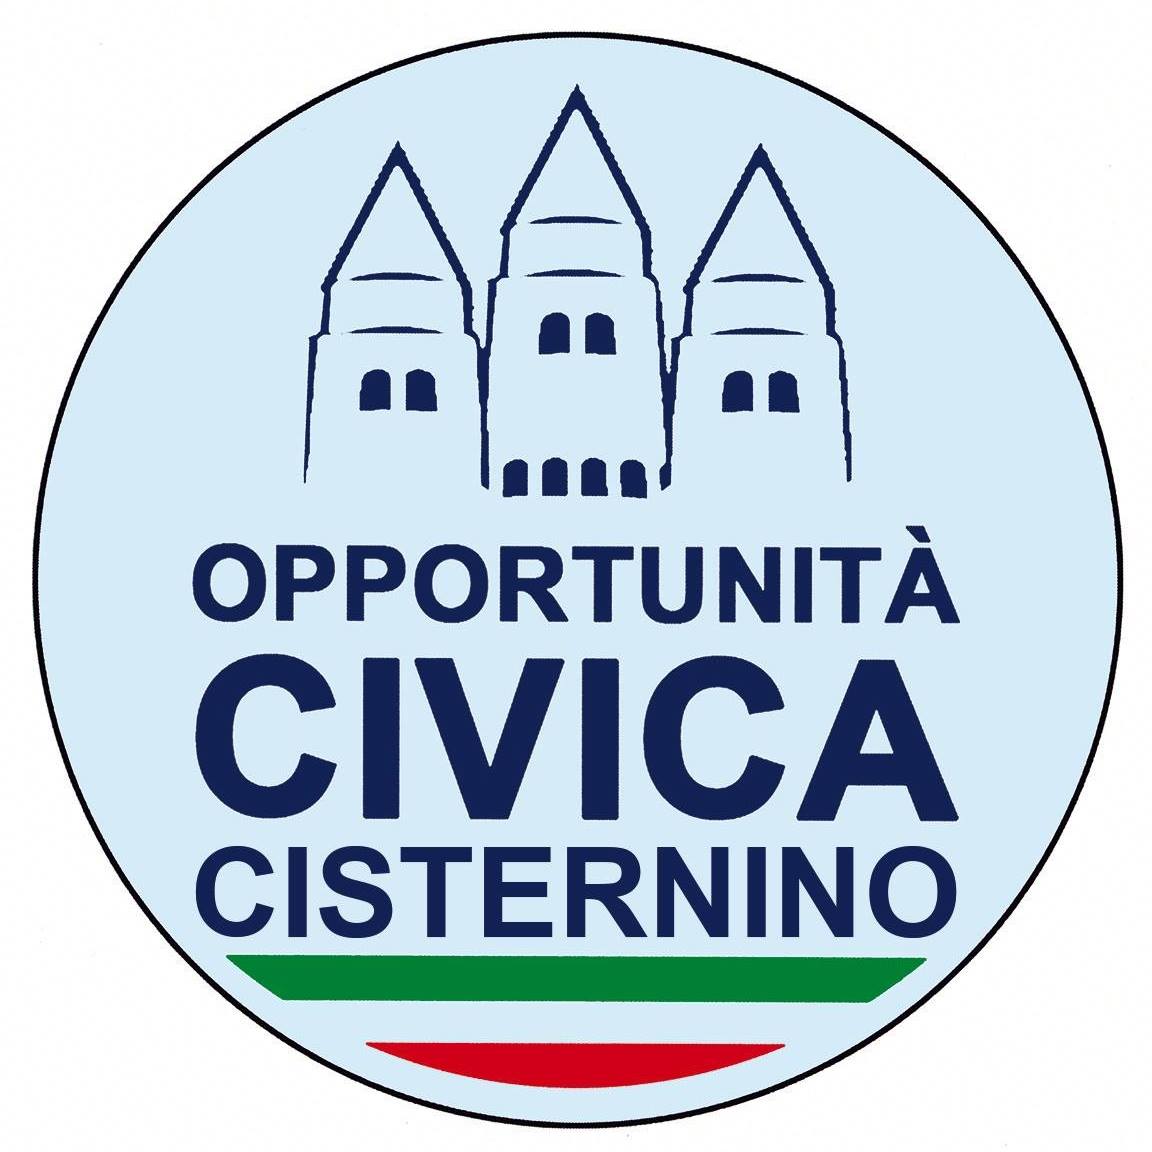 Opportunità Civica Cisternino – Centrodestra: “Emergenza spazzatura senza precedenti”